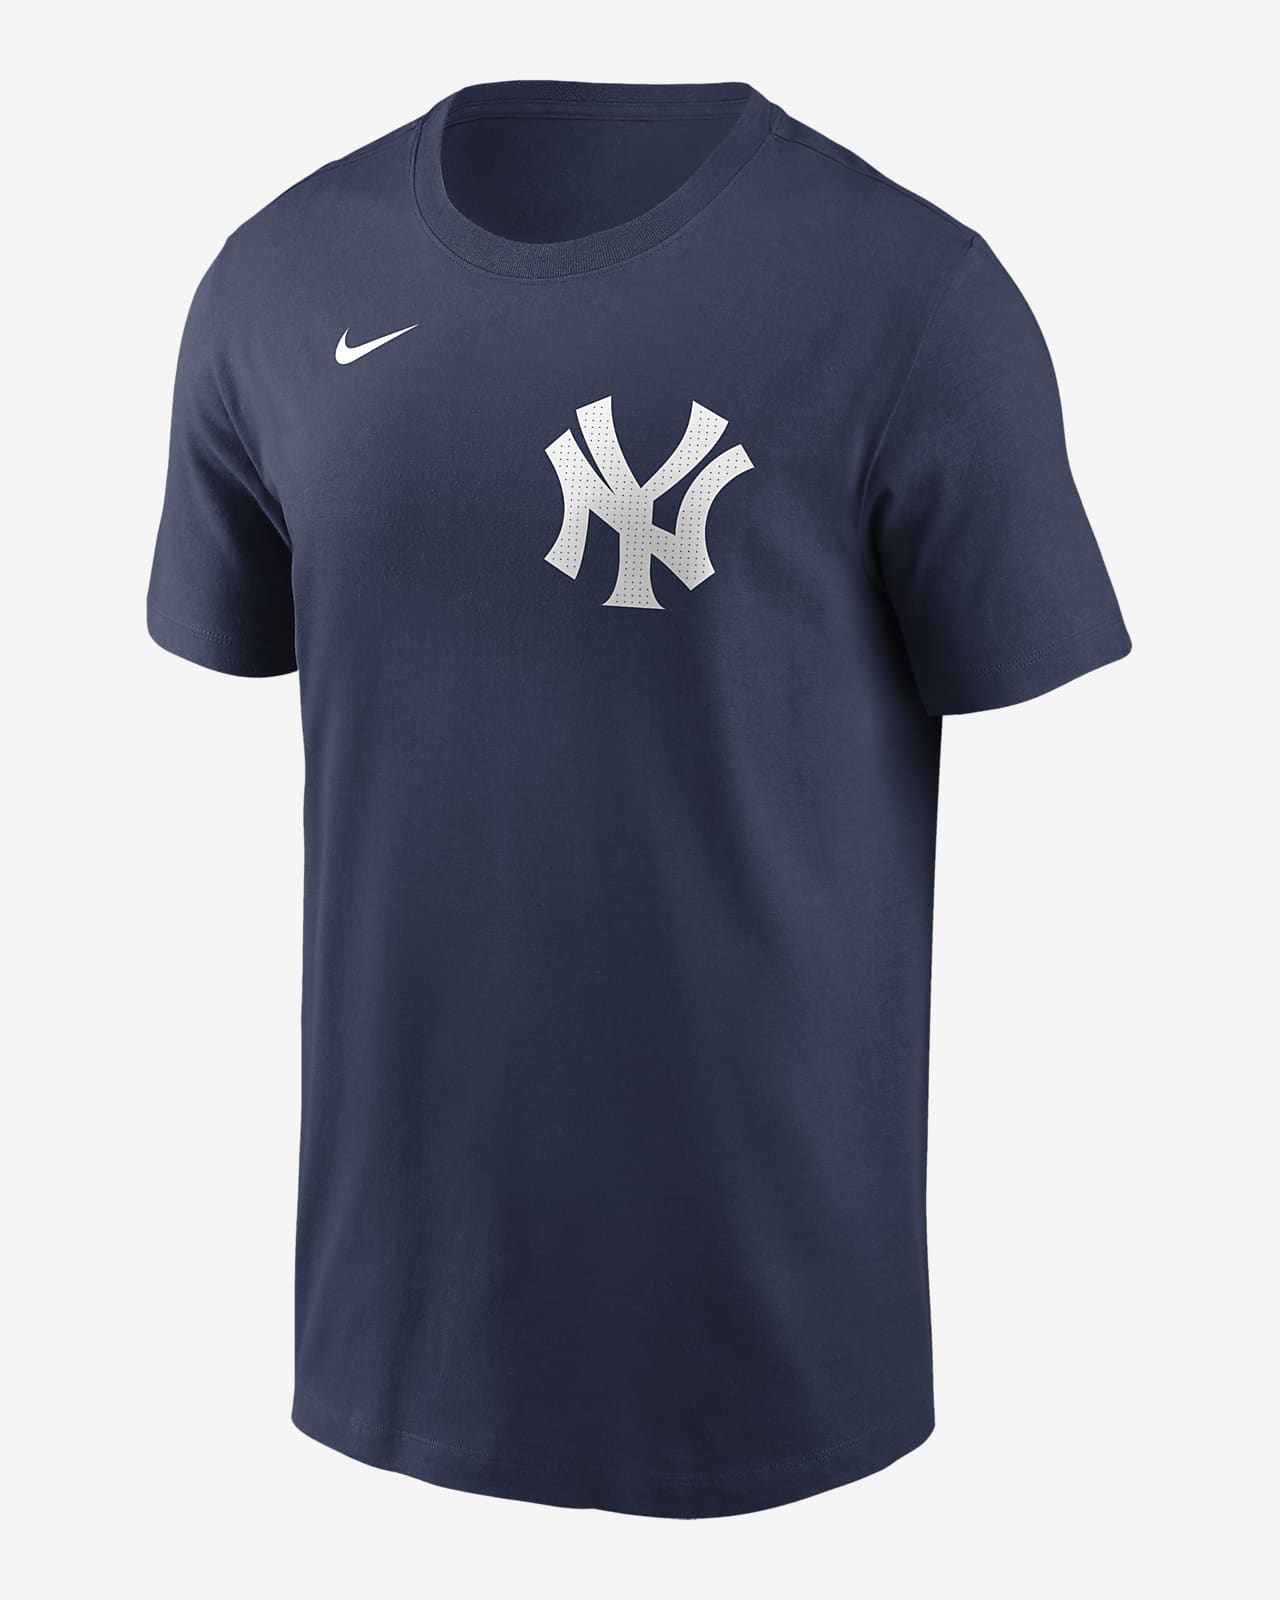 Playera Nike de la MLB para hombre Aaron Judge New York Yankees Fuse